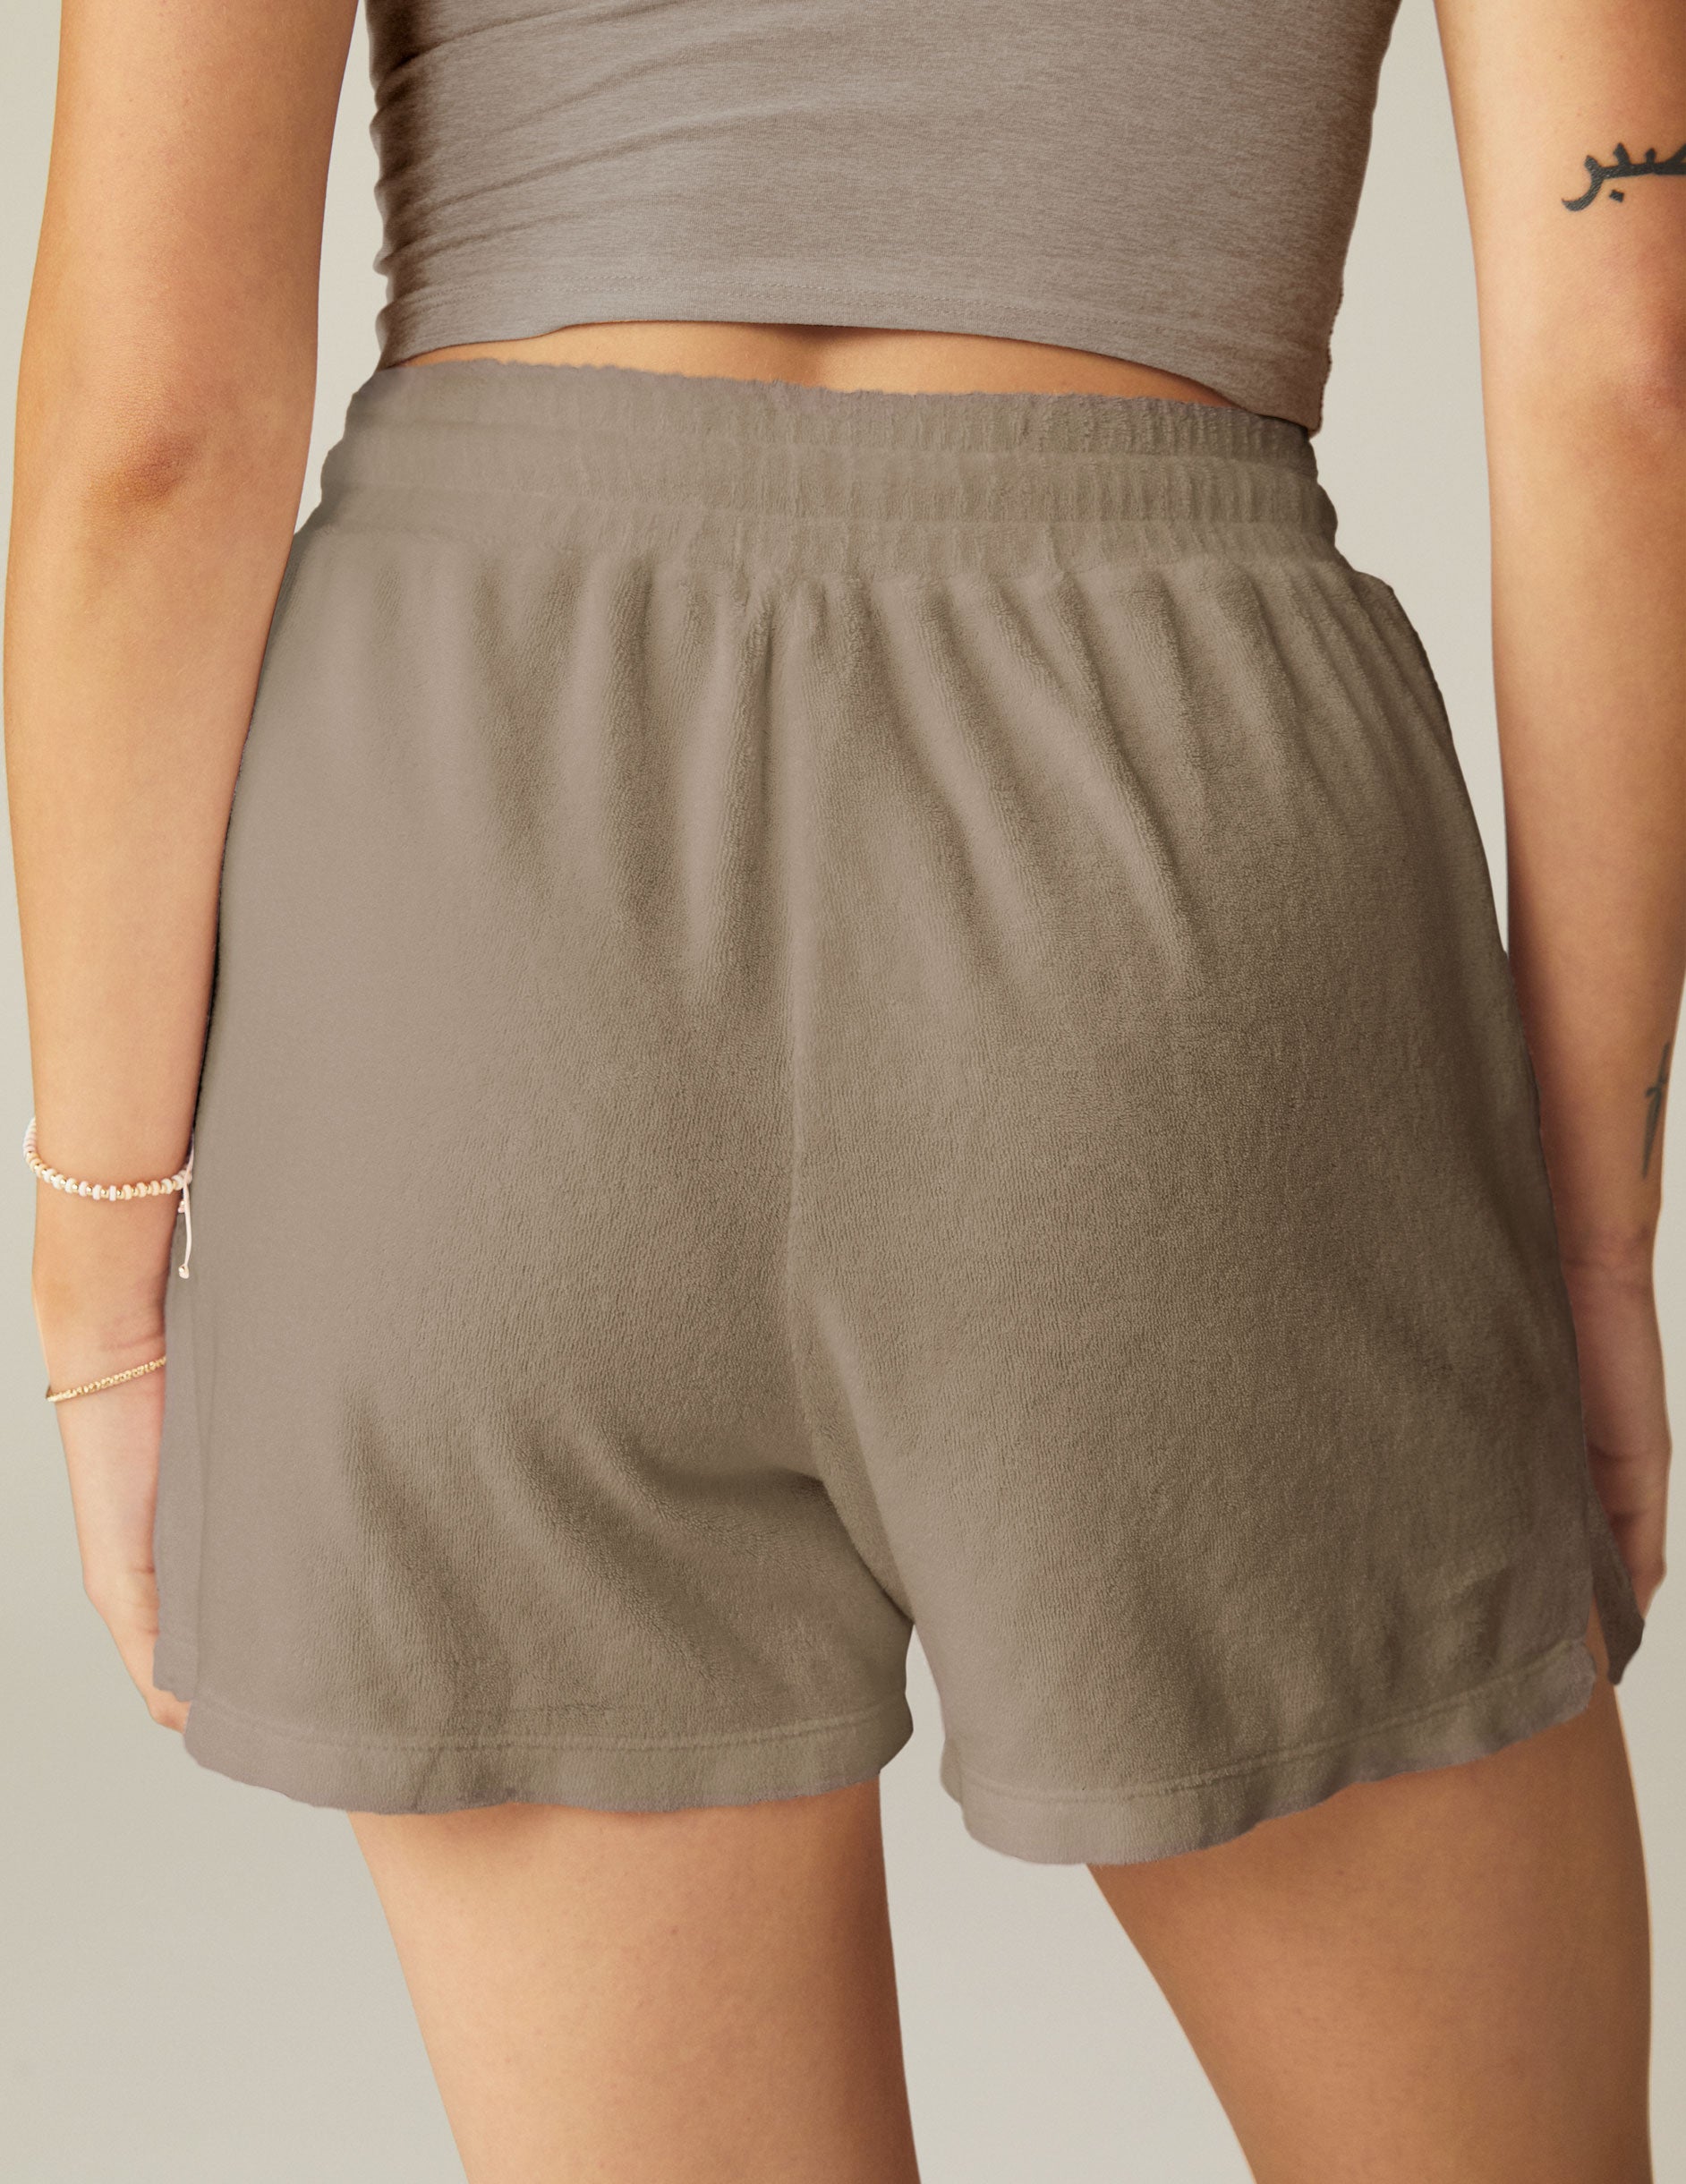 brown shorts with drawstring and pocket at sides